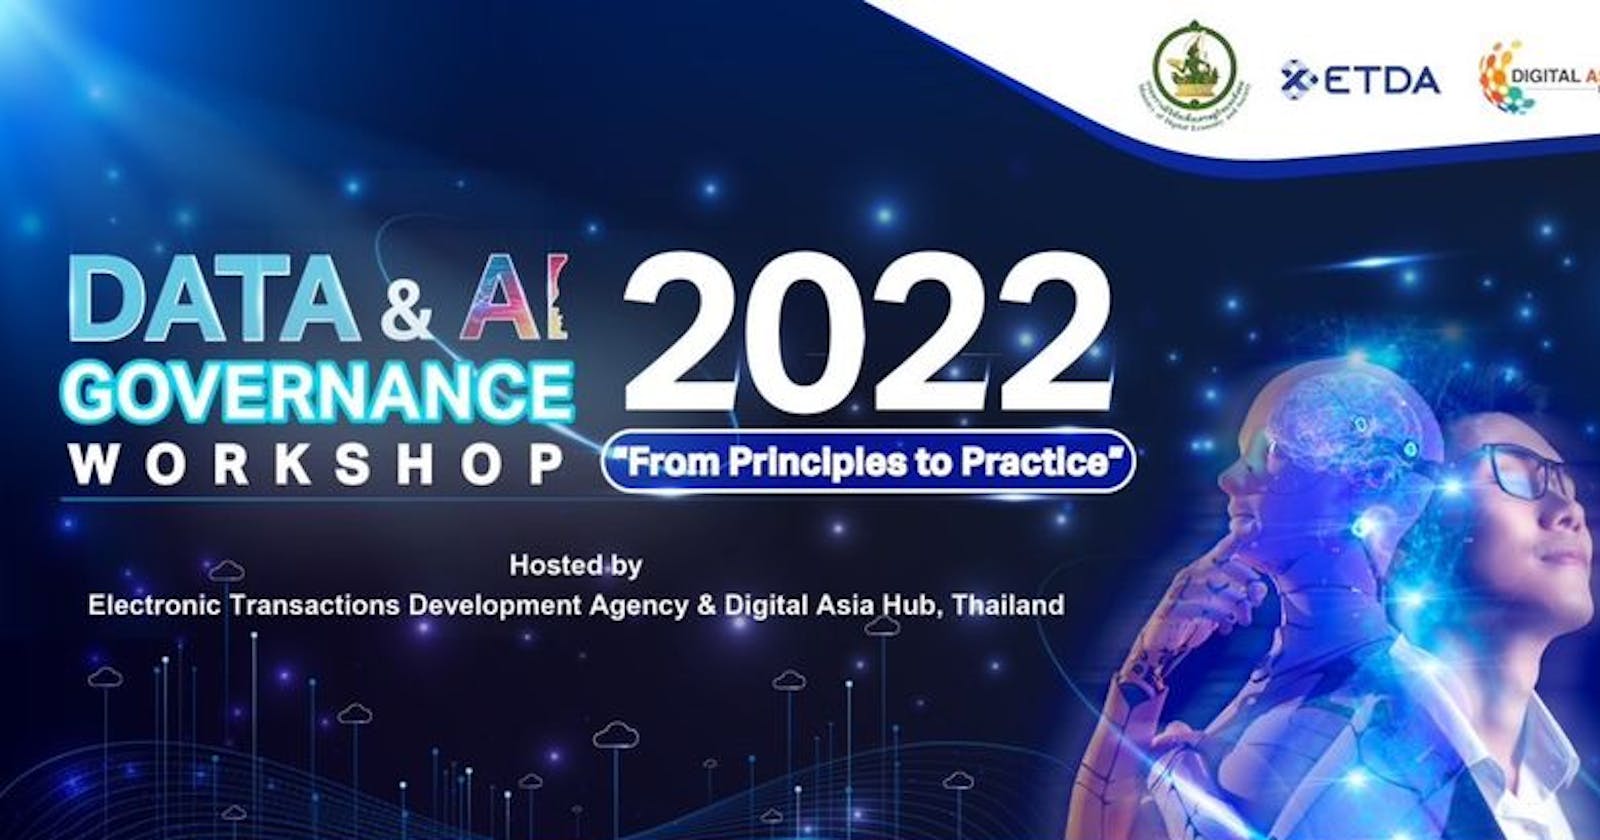 Data & AI Governance Workshop 2022 
ประเทศไทยขับเคลื่อนนโยบายการพัฒนา AI อย่างไร